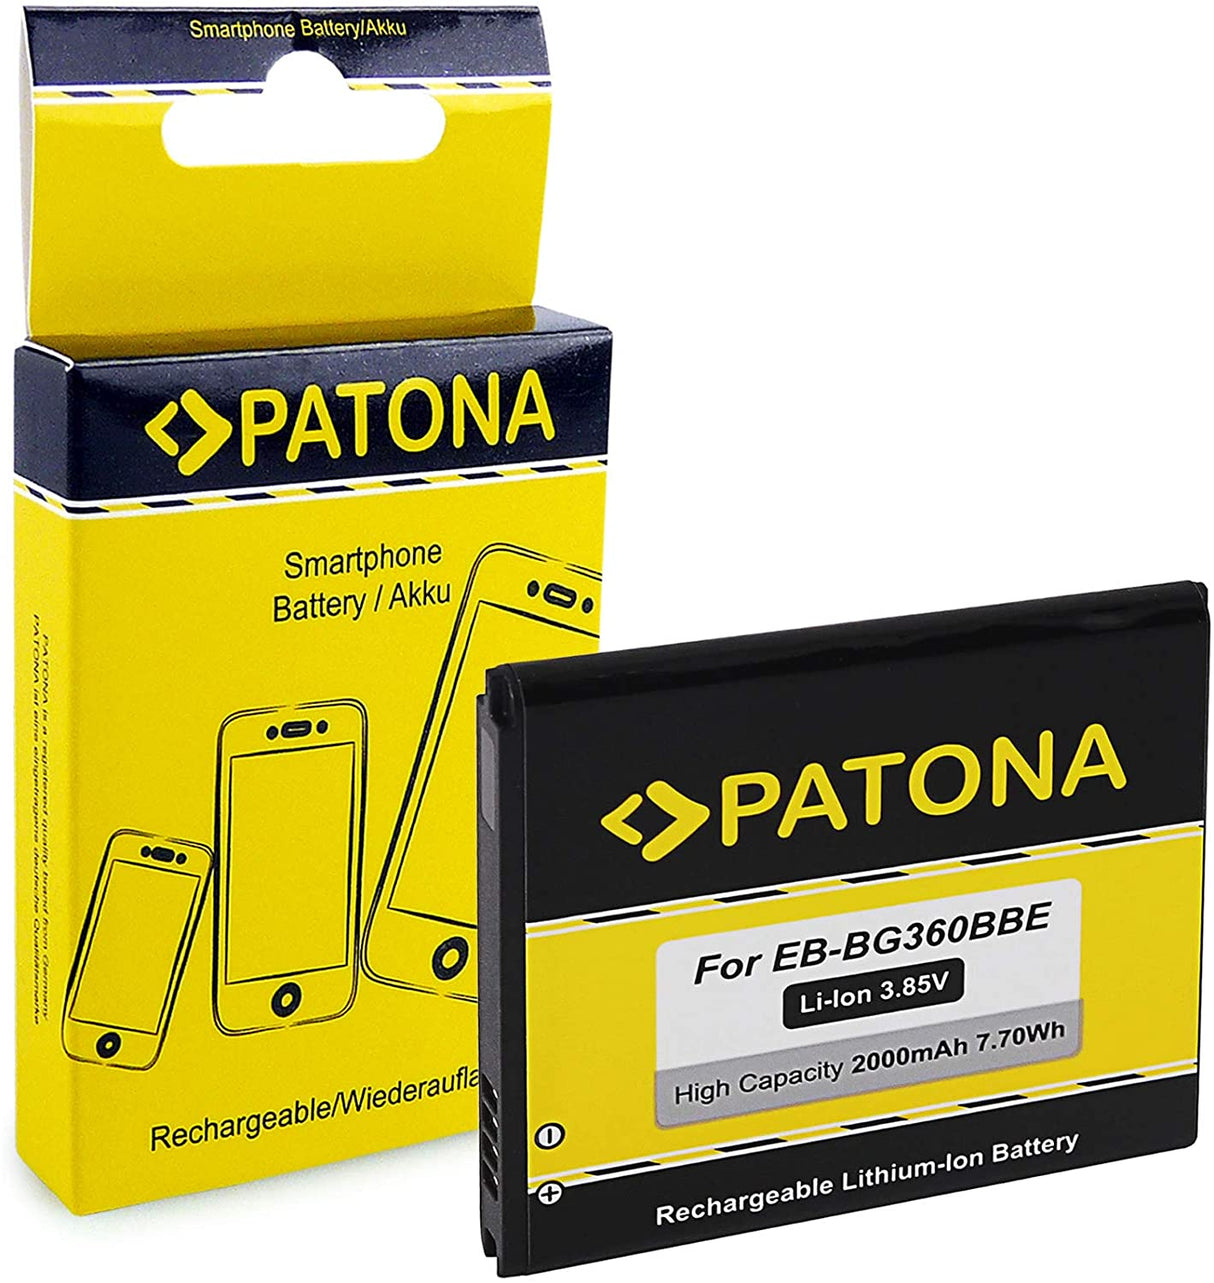 Pantona Bateria Compatível para Samsung Galaxy Core Prime EB-BG360BBE- 2000 mAh